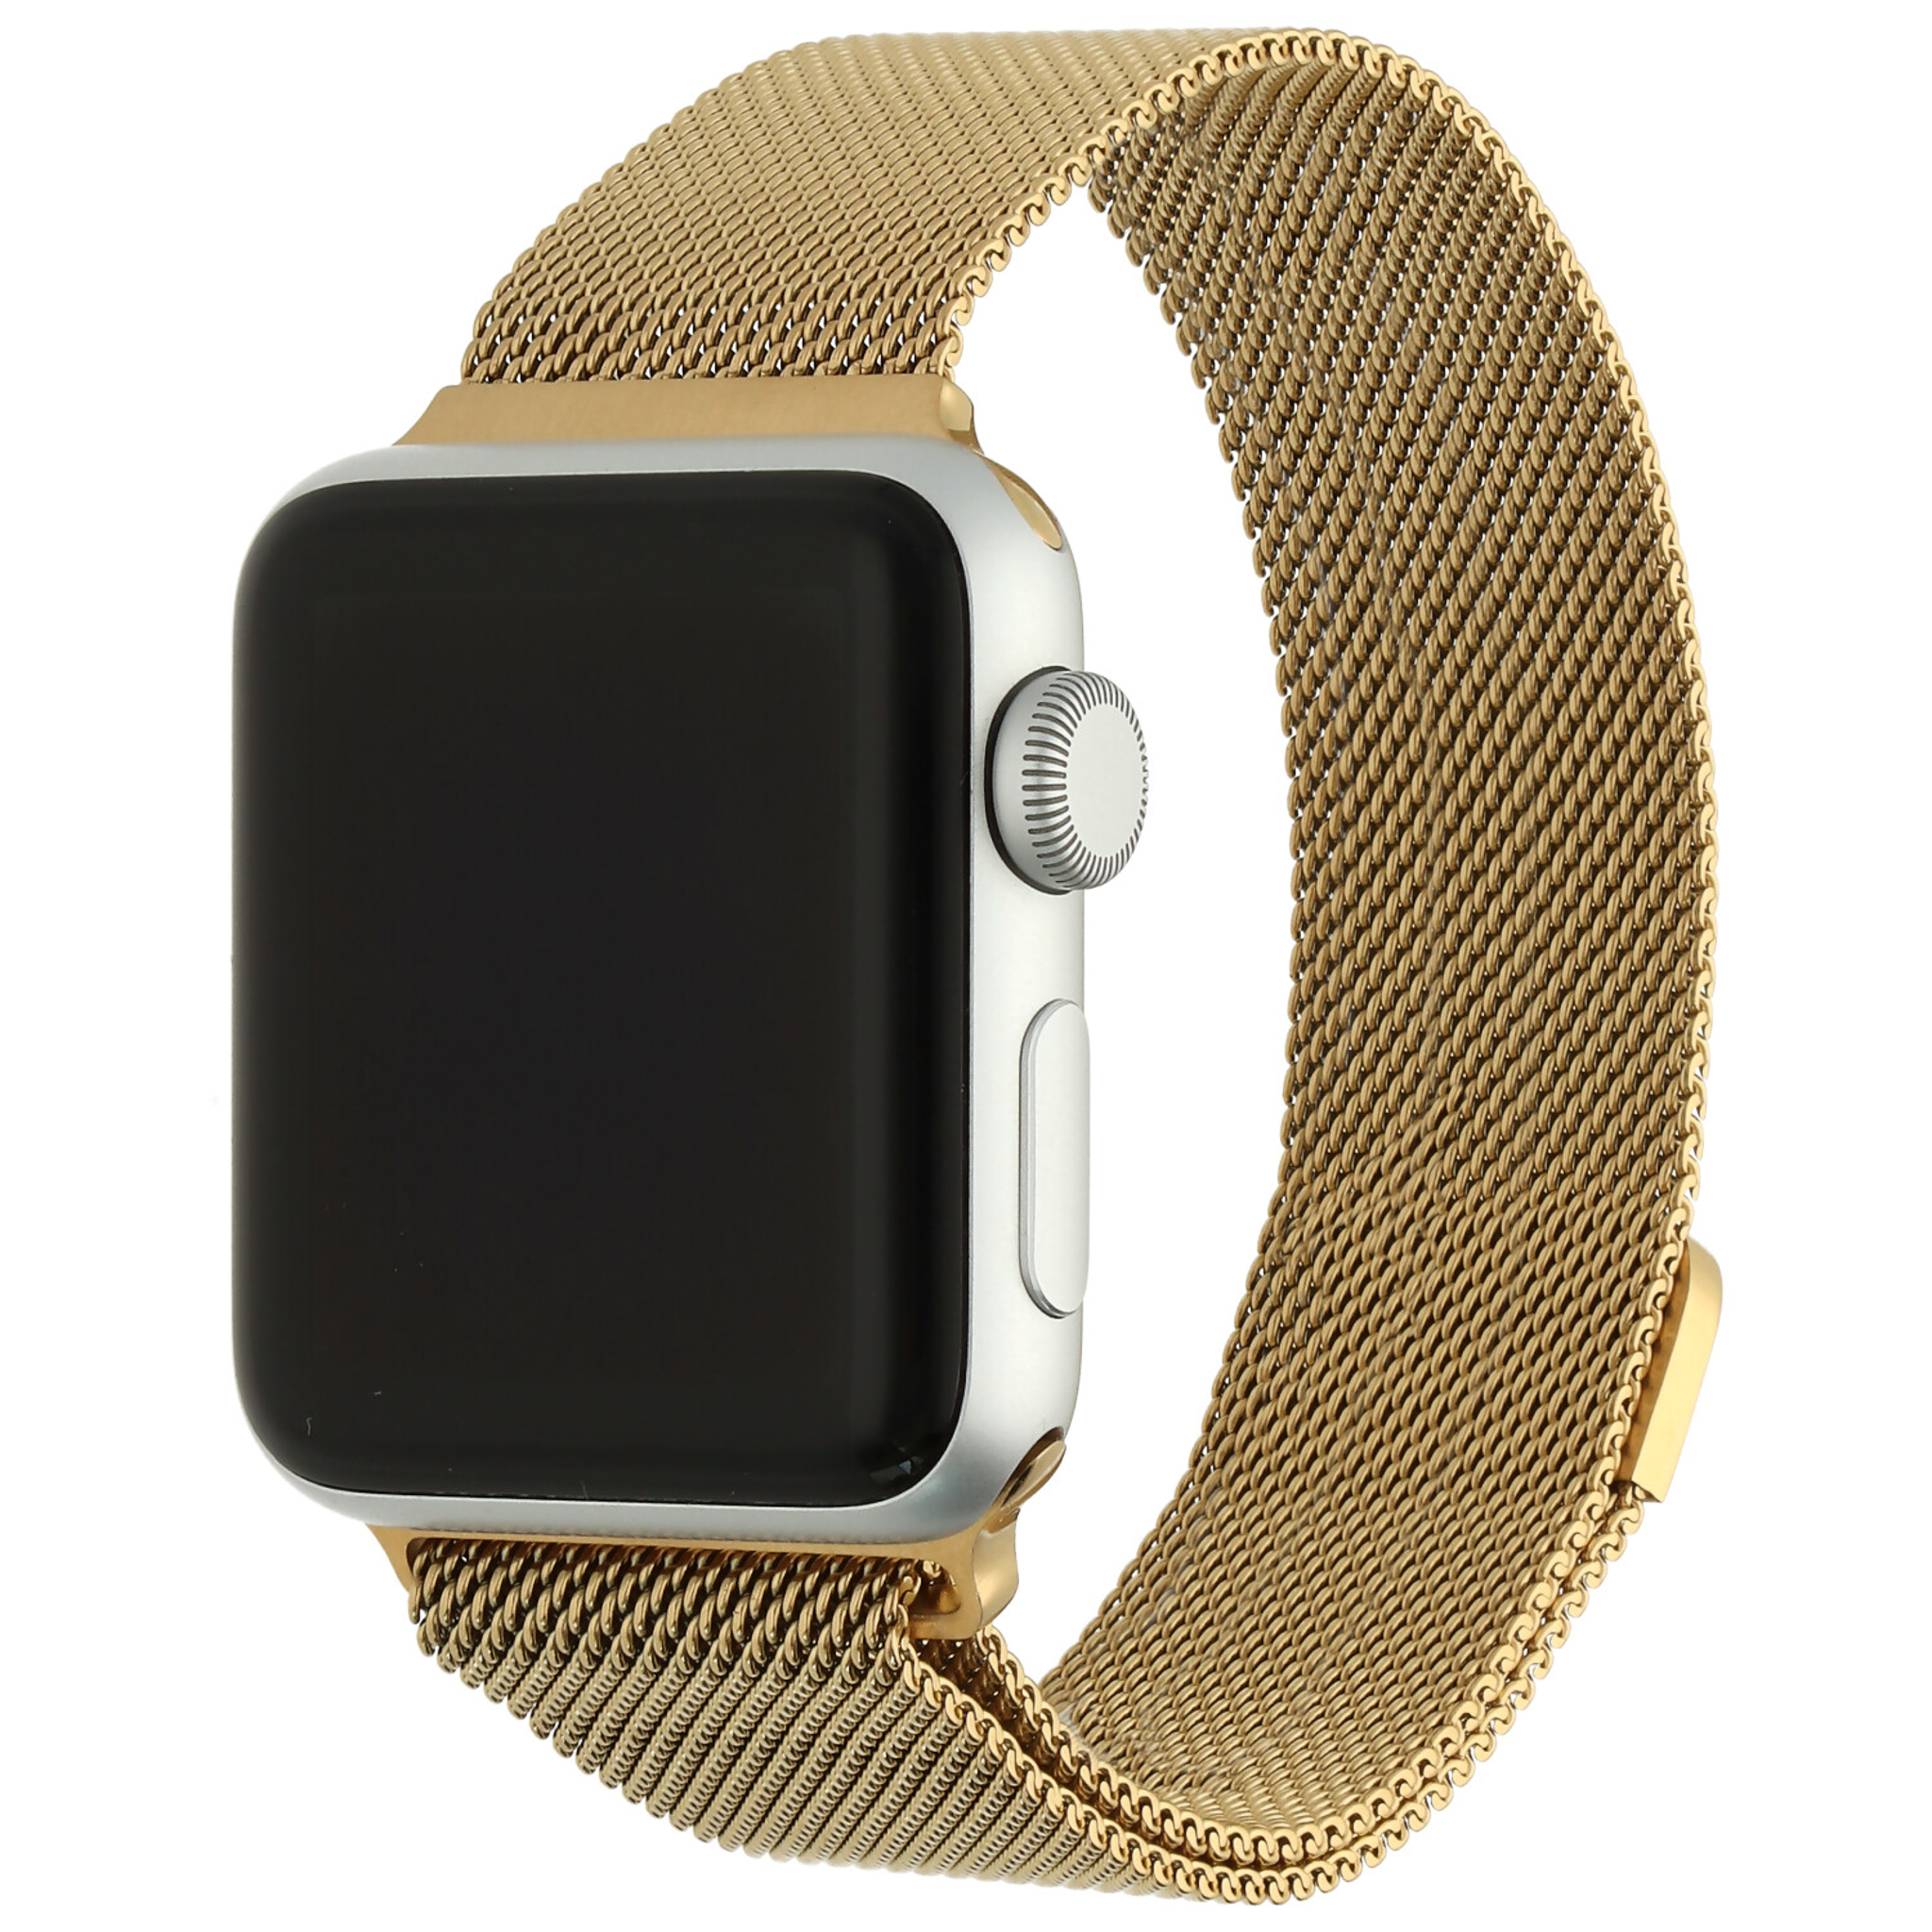 Correa Milanese loop para el Apple Watch - oro